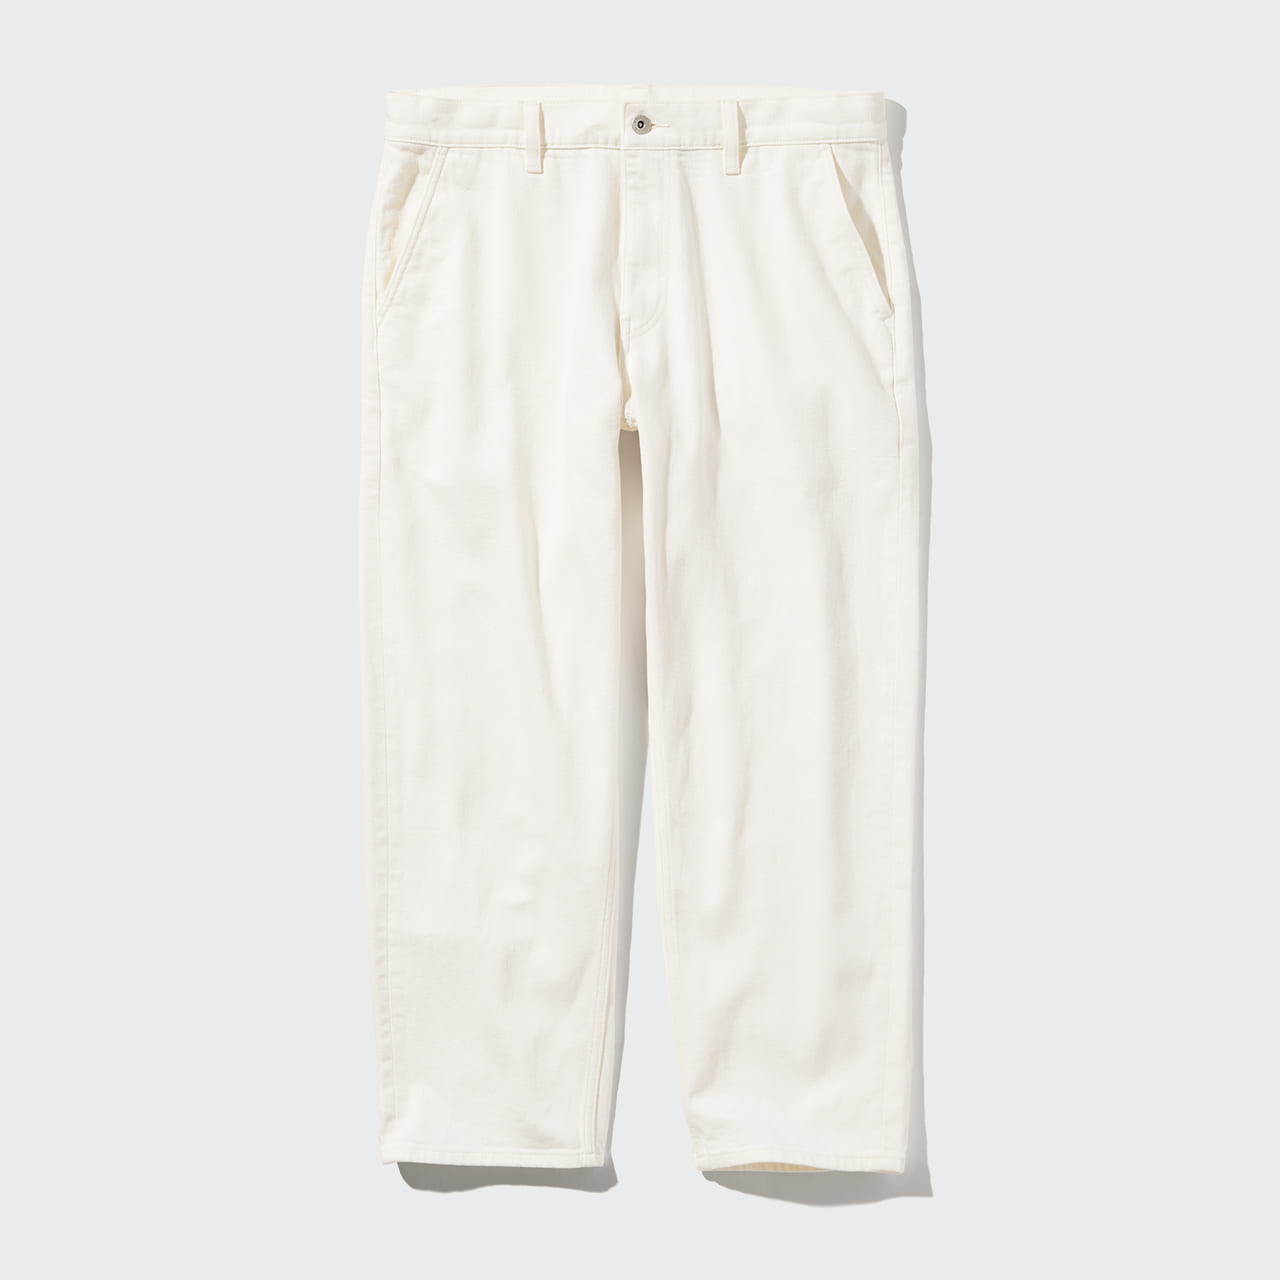 ユニクロの24年春の新作パンツ「リラックスアンクルジーンズ」のホワイト